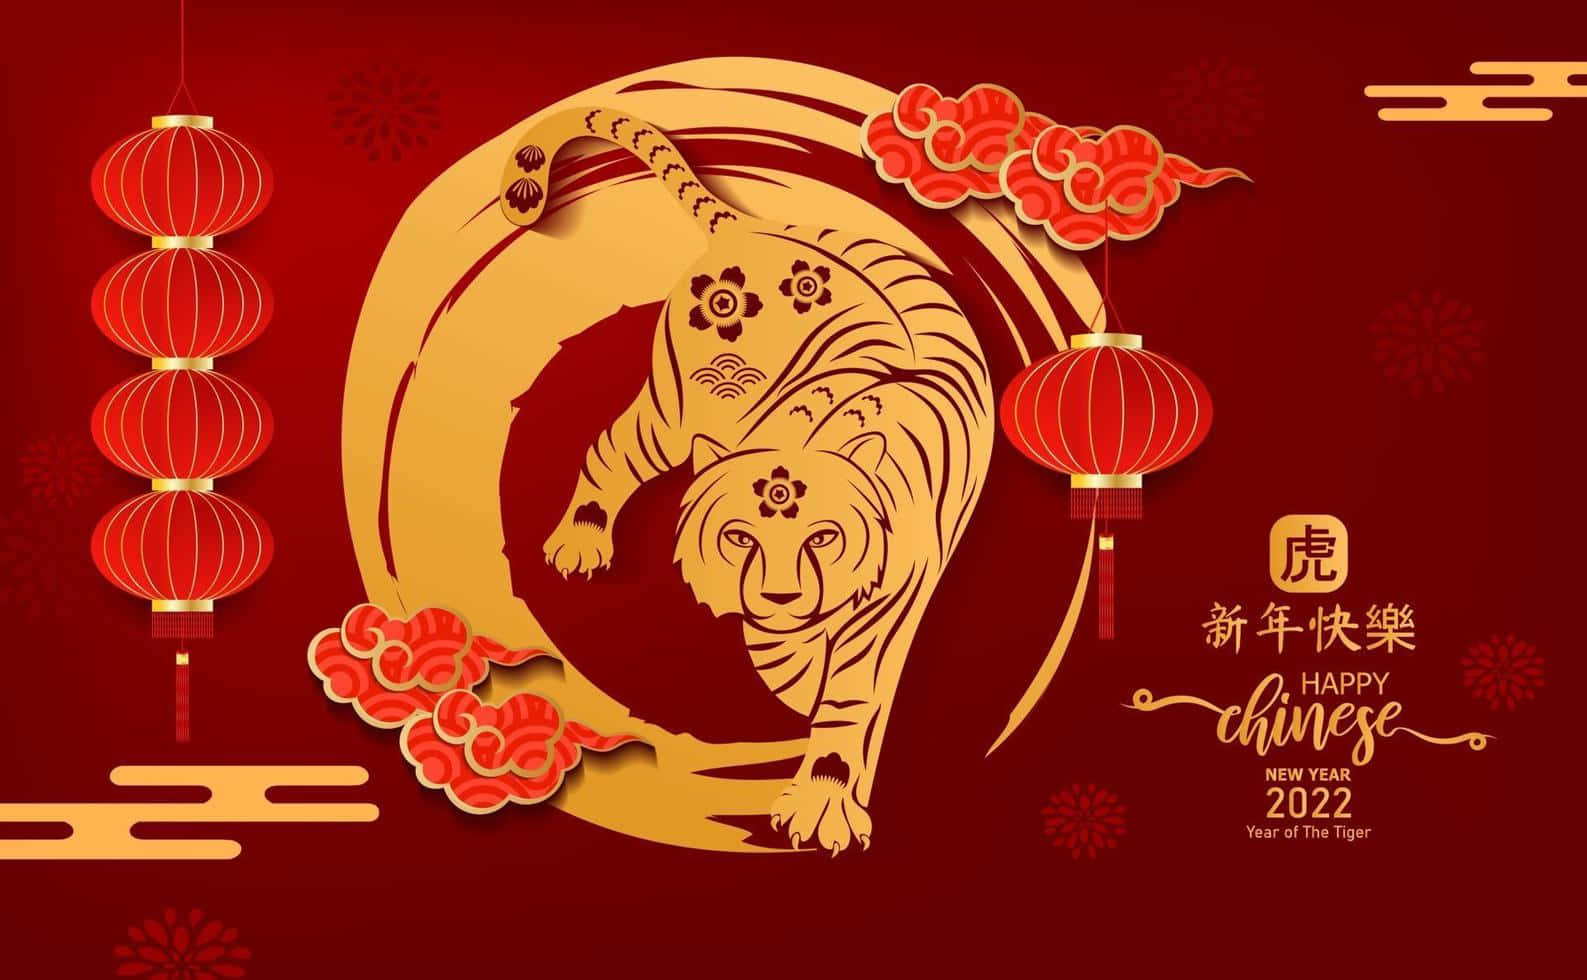 Feiernsie Ein Fröhliches Chinesisches Neujahr 2022!